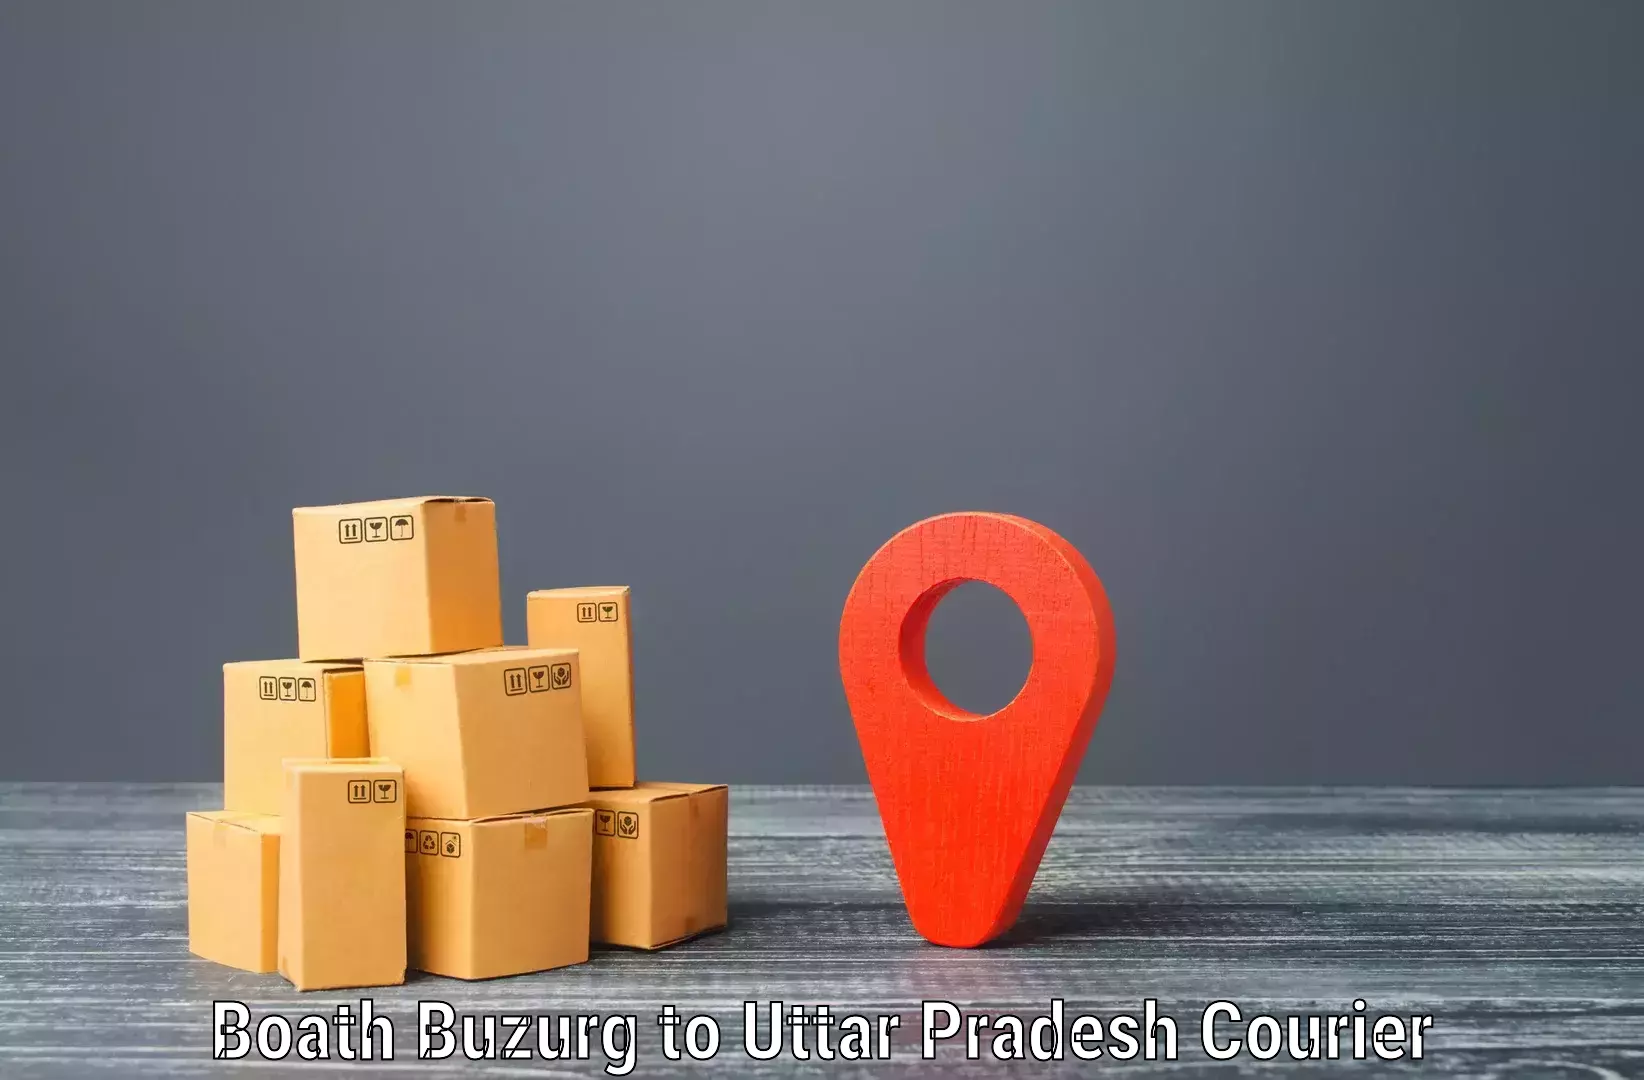 High-speed parcel service in Boath Buzurg to Kauriram